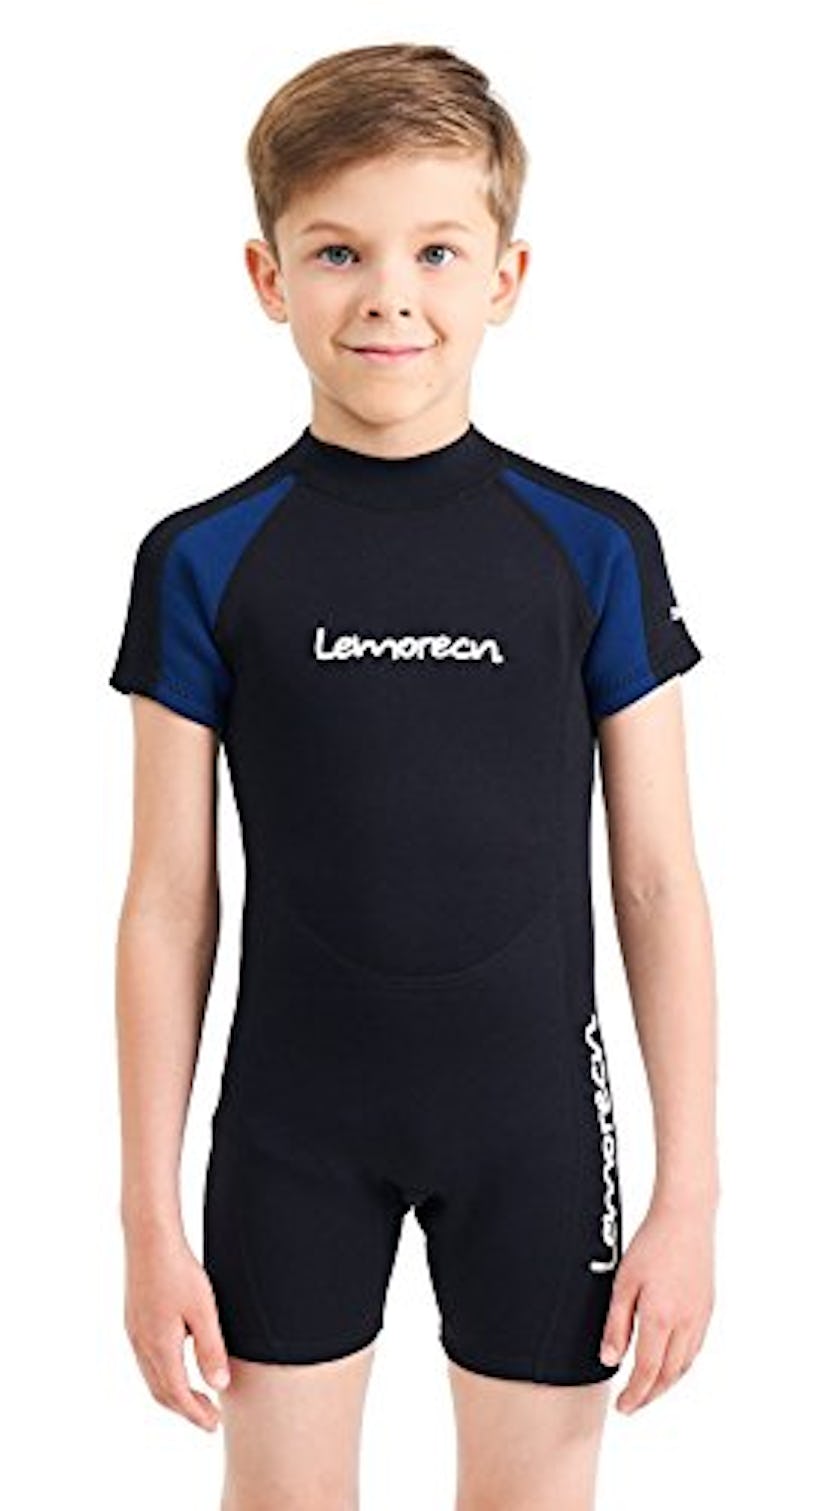 Lemorecn Kids' Wetsuit